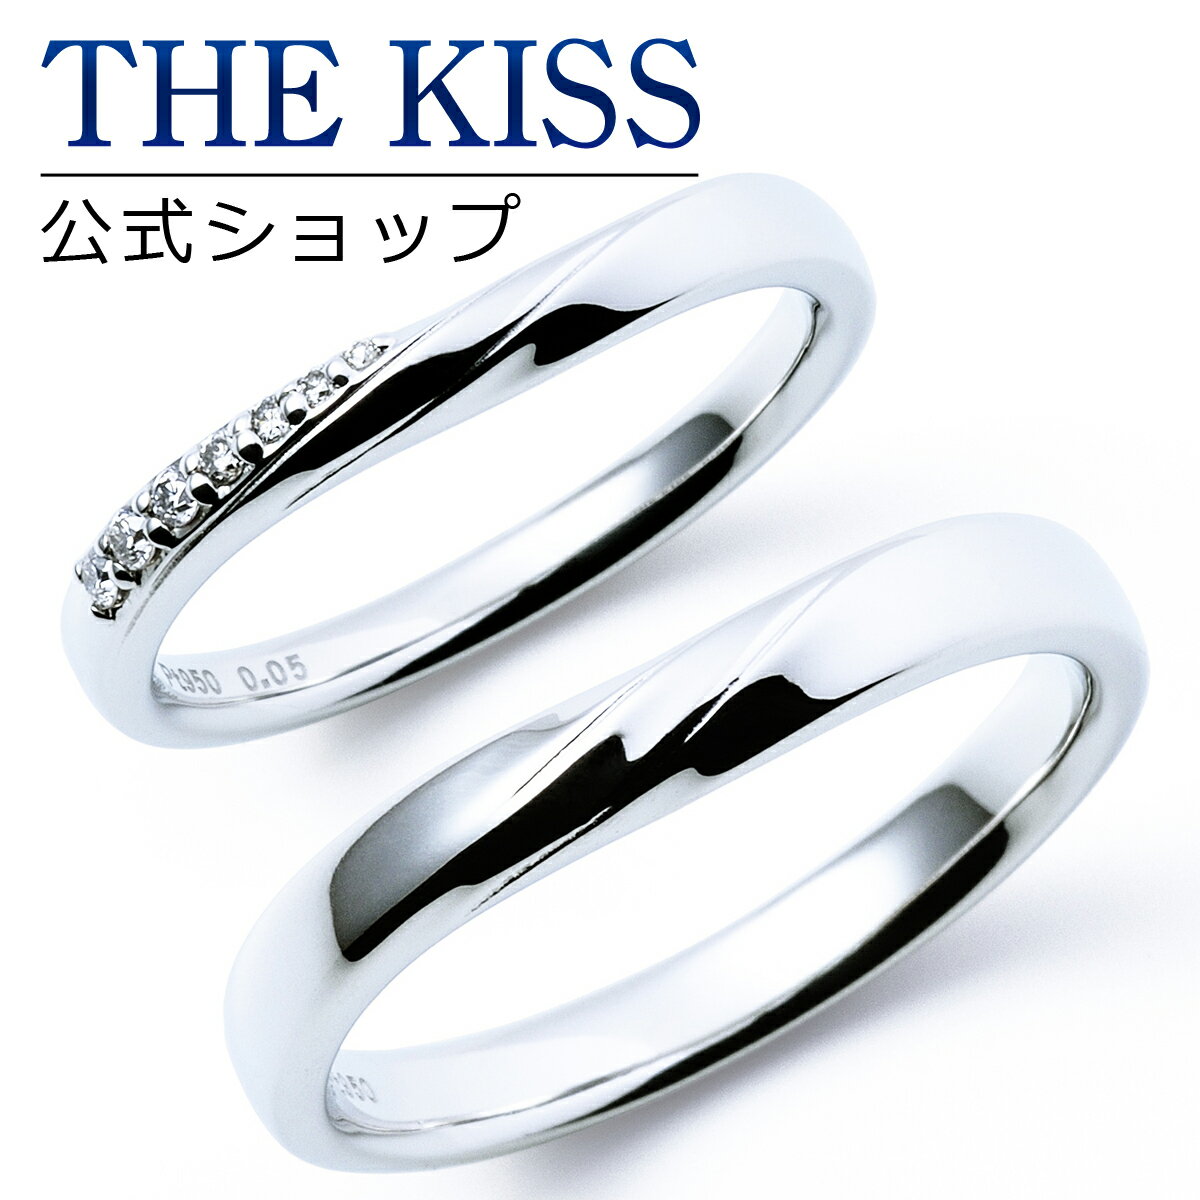 【ラッピング無料】【刻印無料】【THE KISS Anniversary】 プラチナ マリッジ リング 結婚指輪 ペアリング THE KISS ザキッス リング・指輪 7061122131-7061122132 セット シンプル 男性 女性 2個セット 母の日